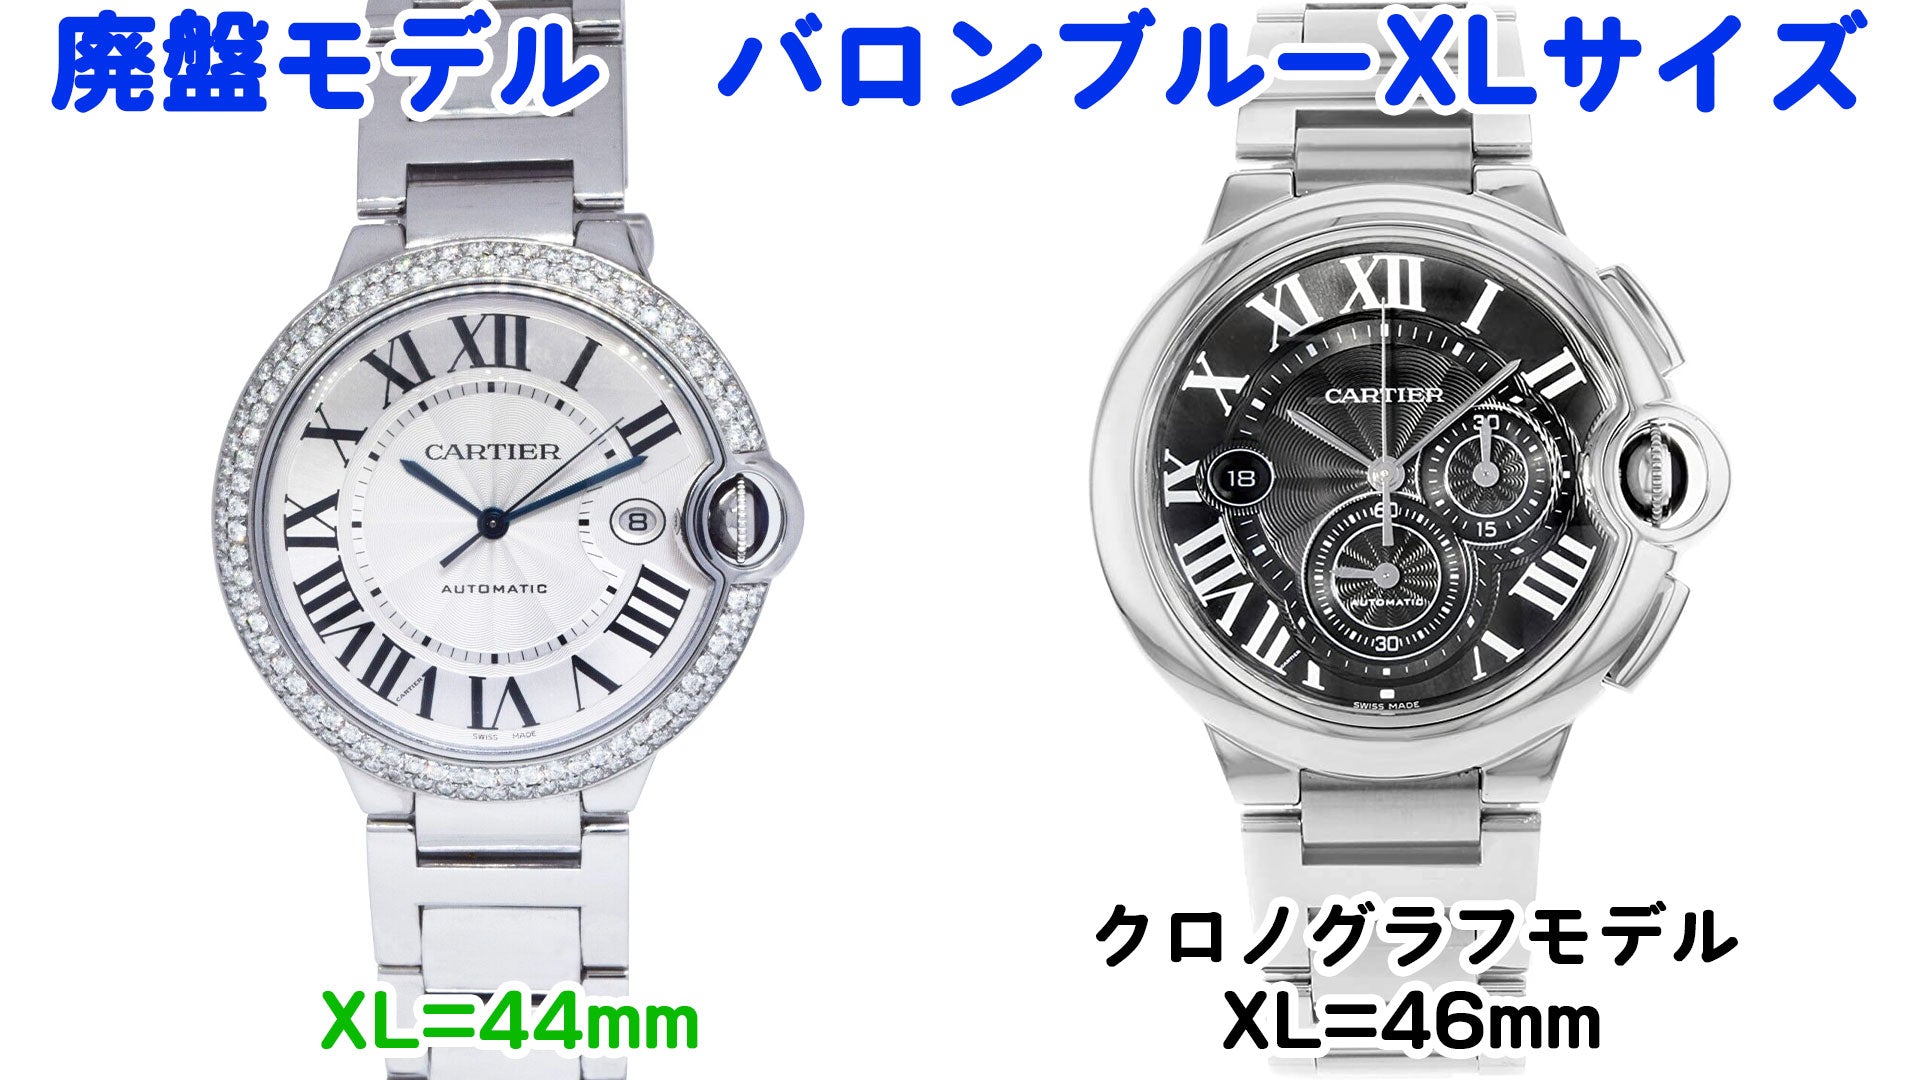 Cartier watch, discontinued model, Ballon Bleu, XL size